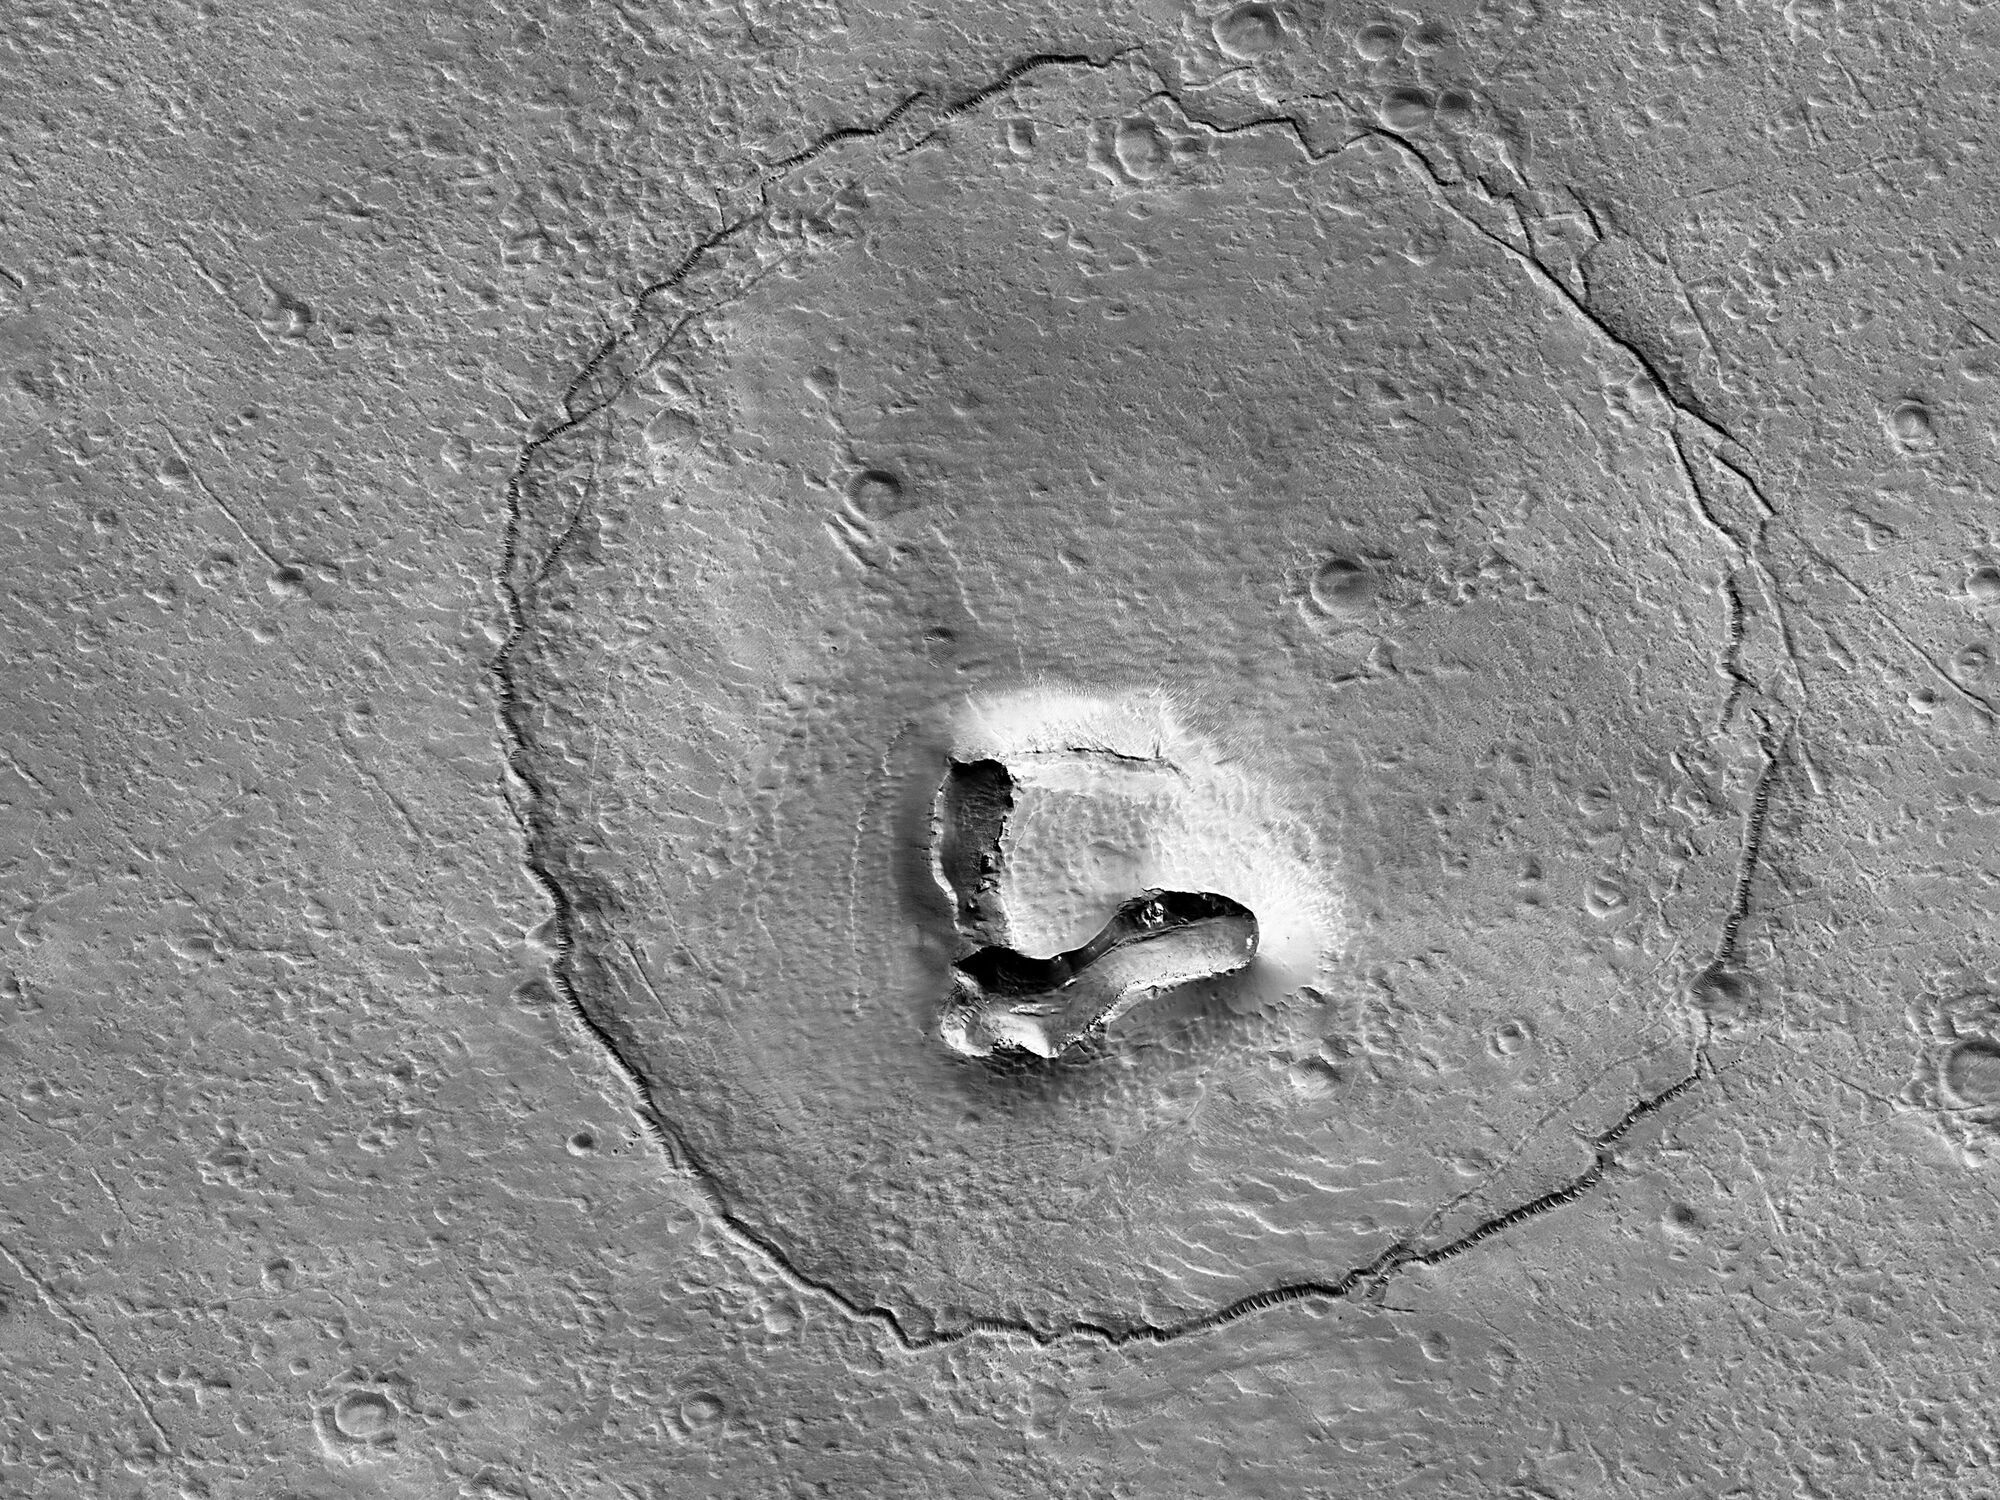 Аппарат NASA Mars Reconnaissance Orbiter сделал снимок образования на поверхности Марса, похожего на мордочку медведя